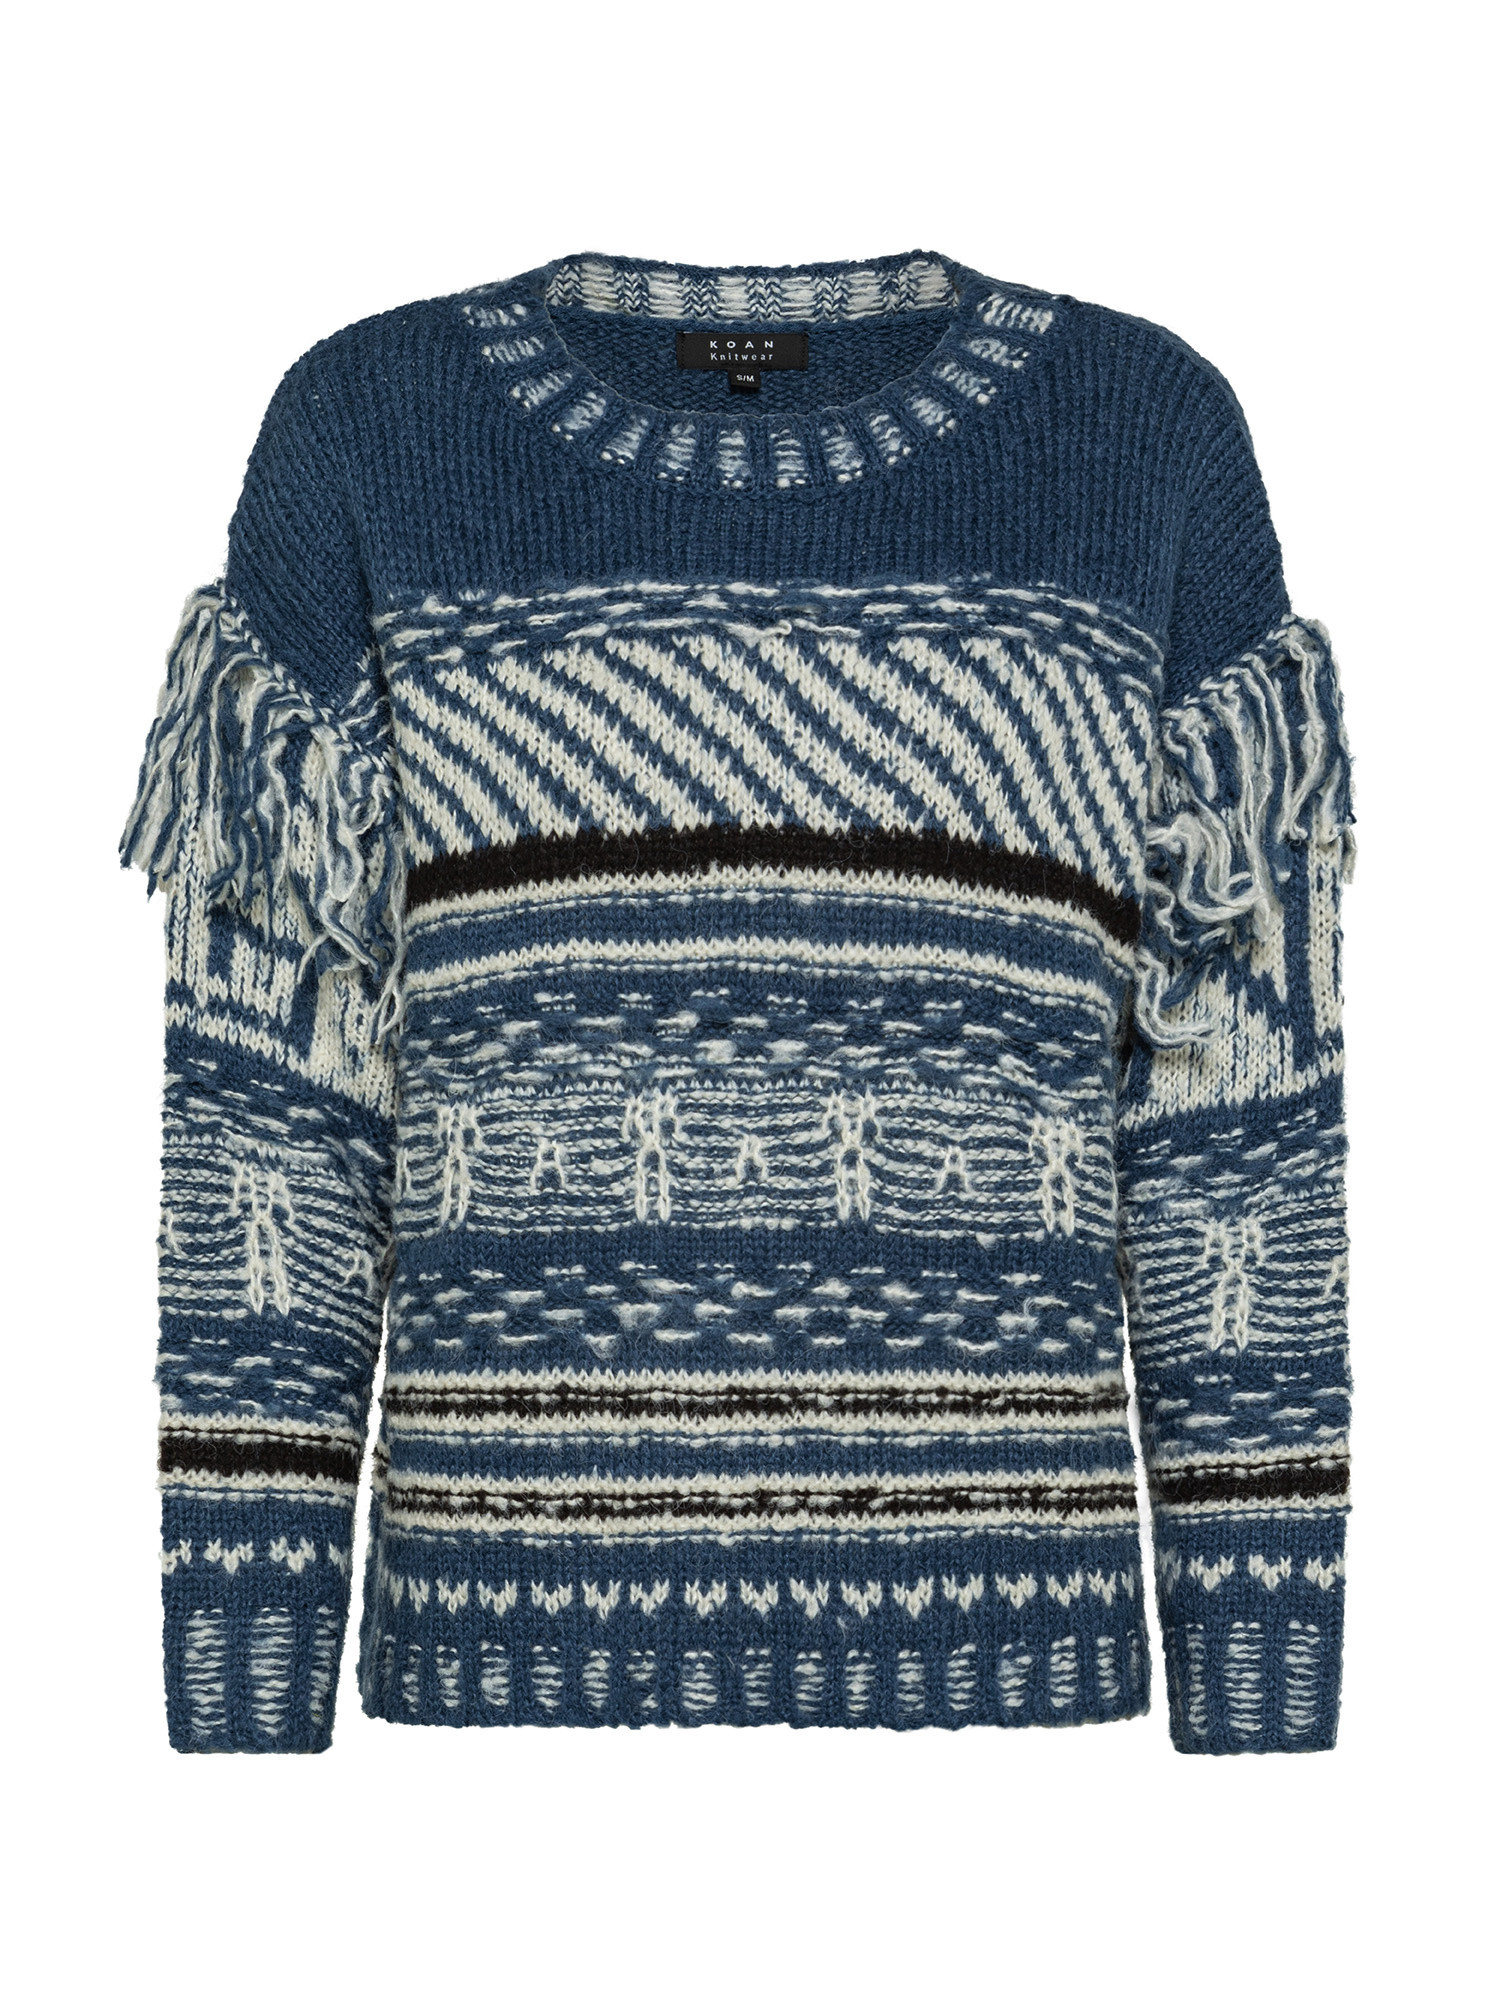 Koan Collection свитер с круглым вырезом в этническом стиле, бледно-синий пуловер с витым узором и круглым вырезом xs черный